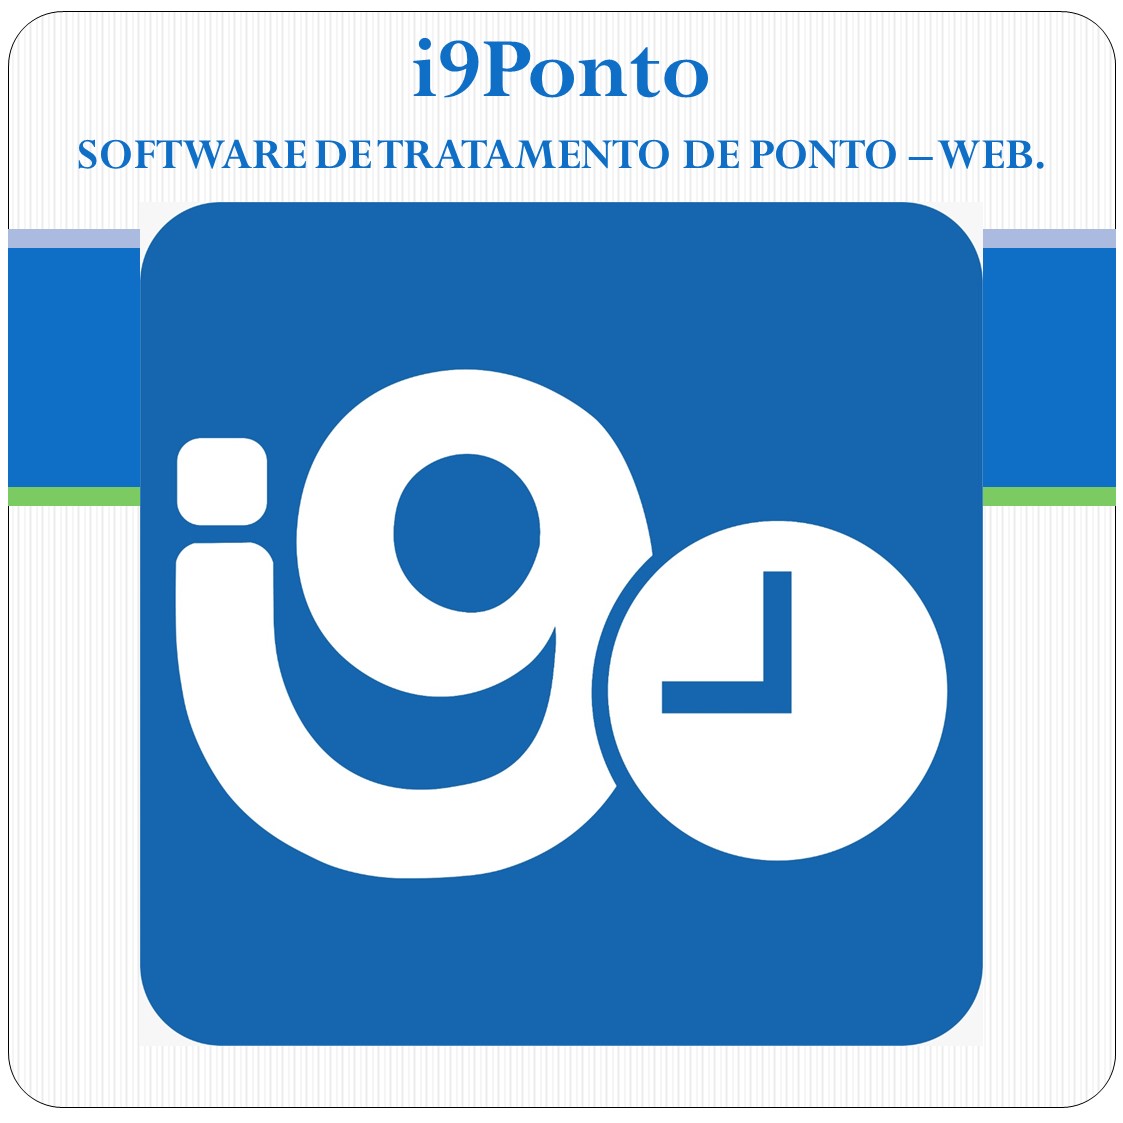 Software de Tratamento de Ponto Web - i9Ponto + REP-P